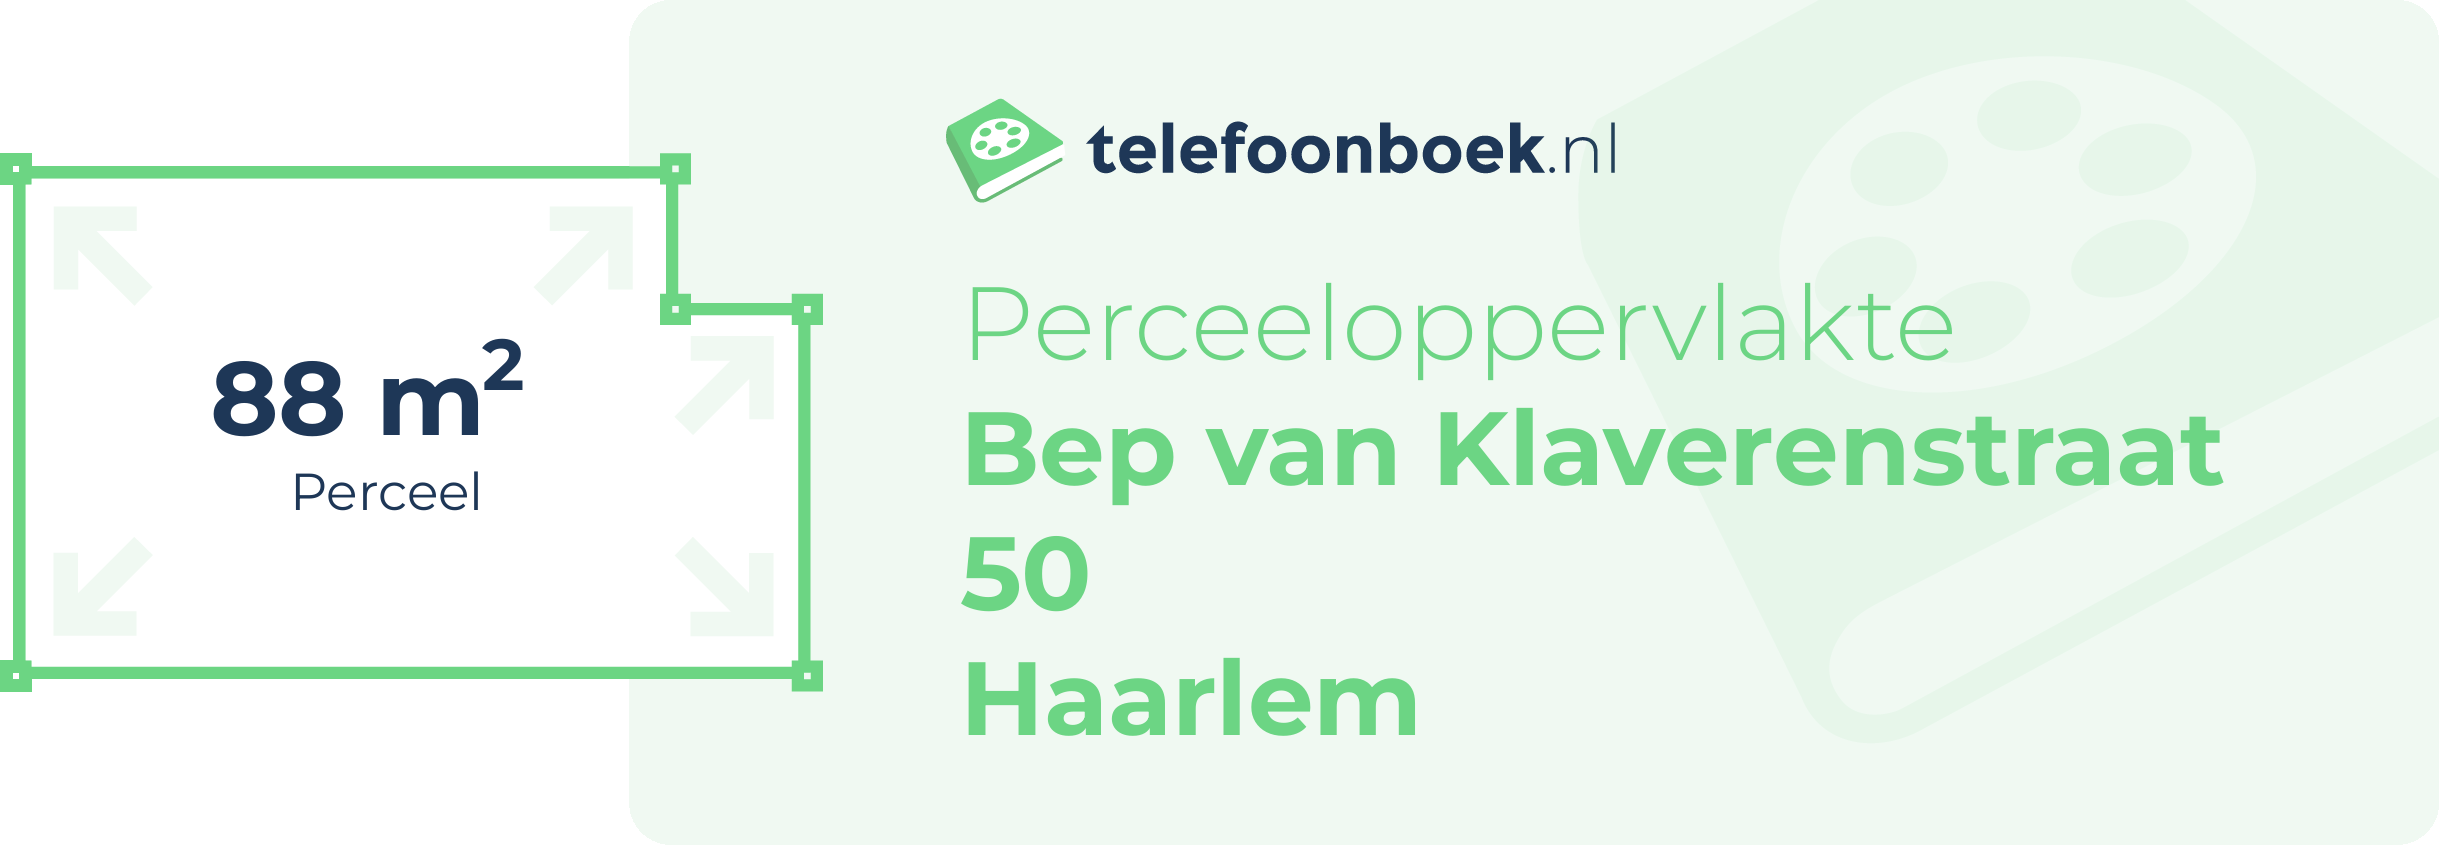 Perceeloppervlakte Bep Van Klaverenstraat 50 Haarlem